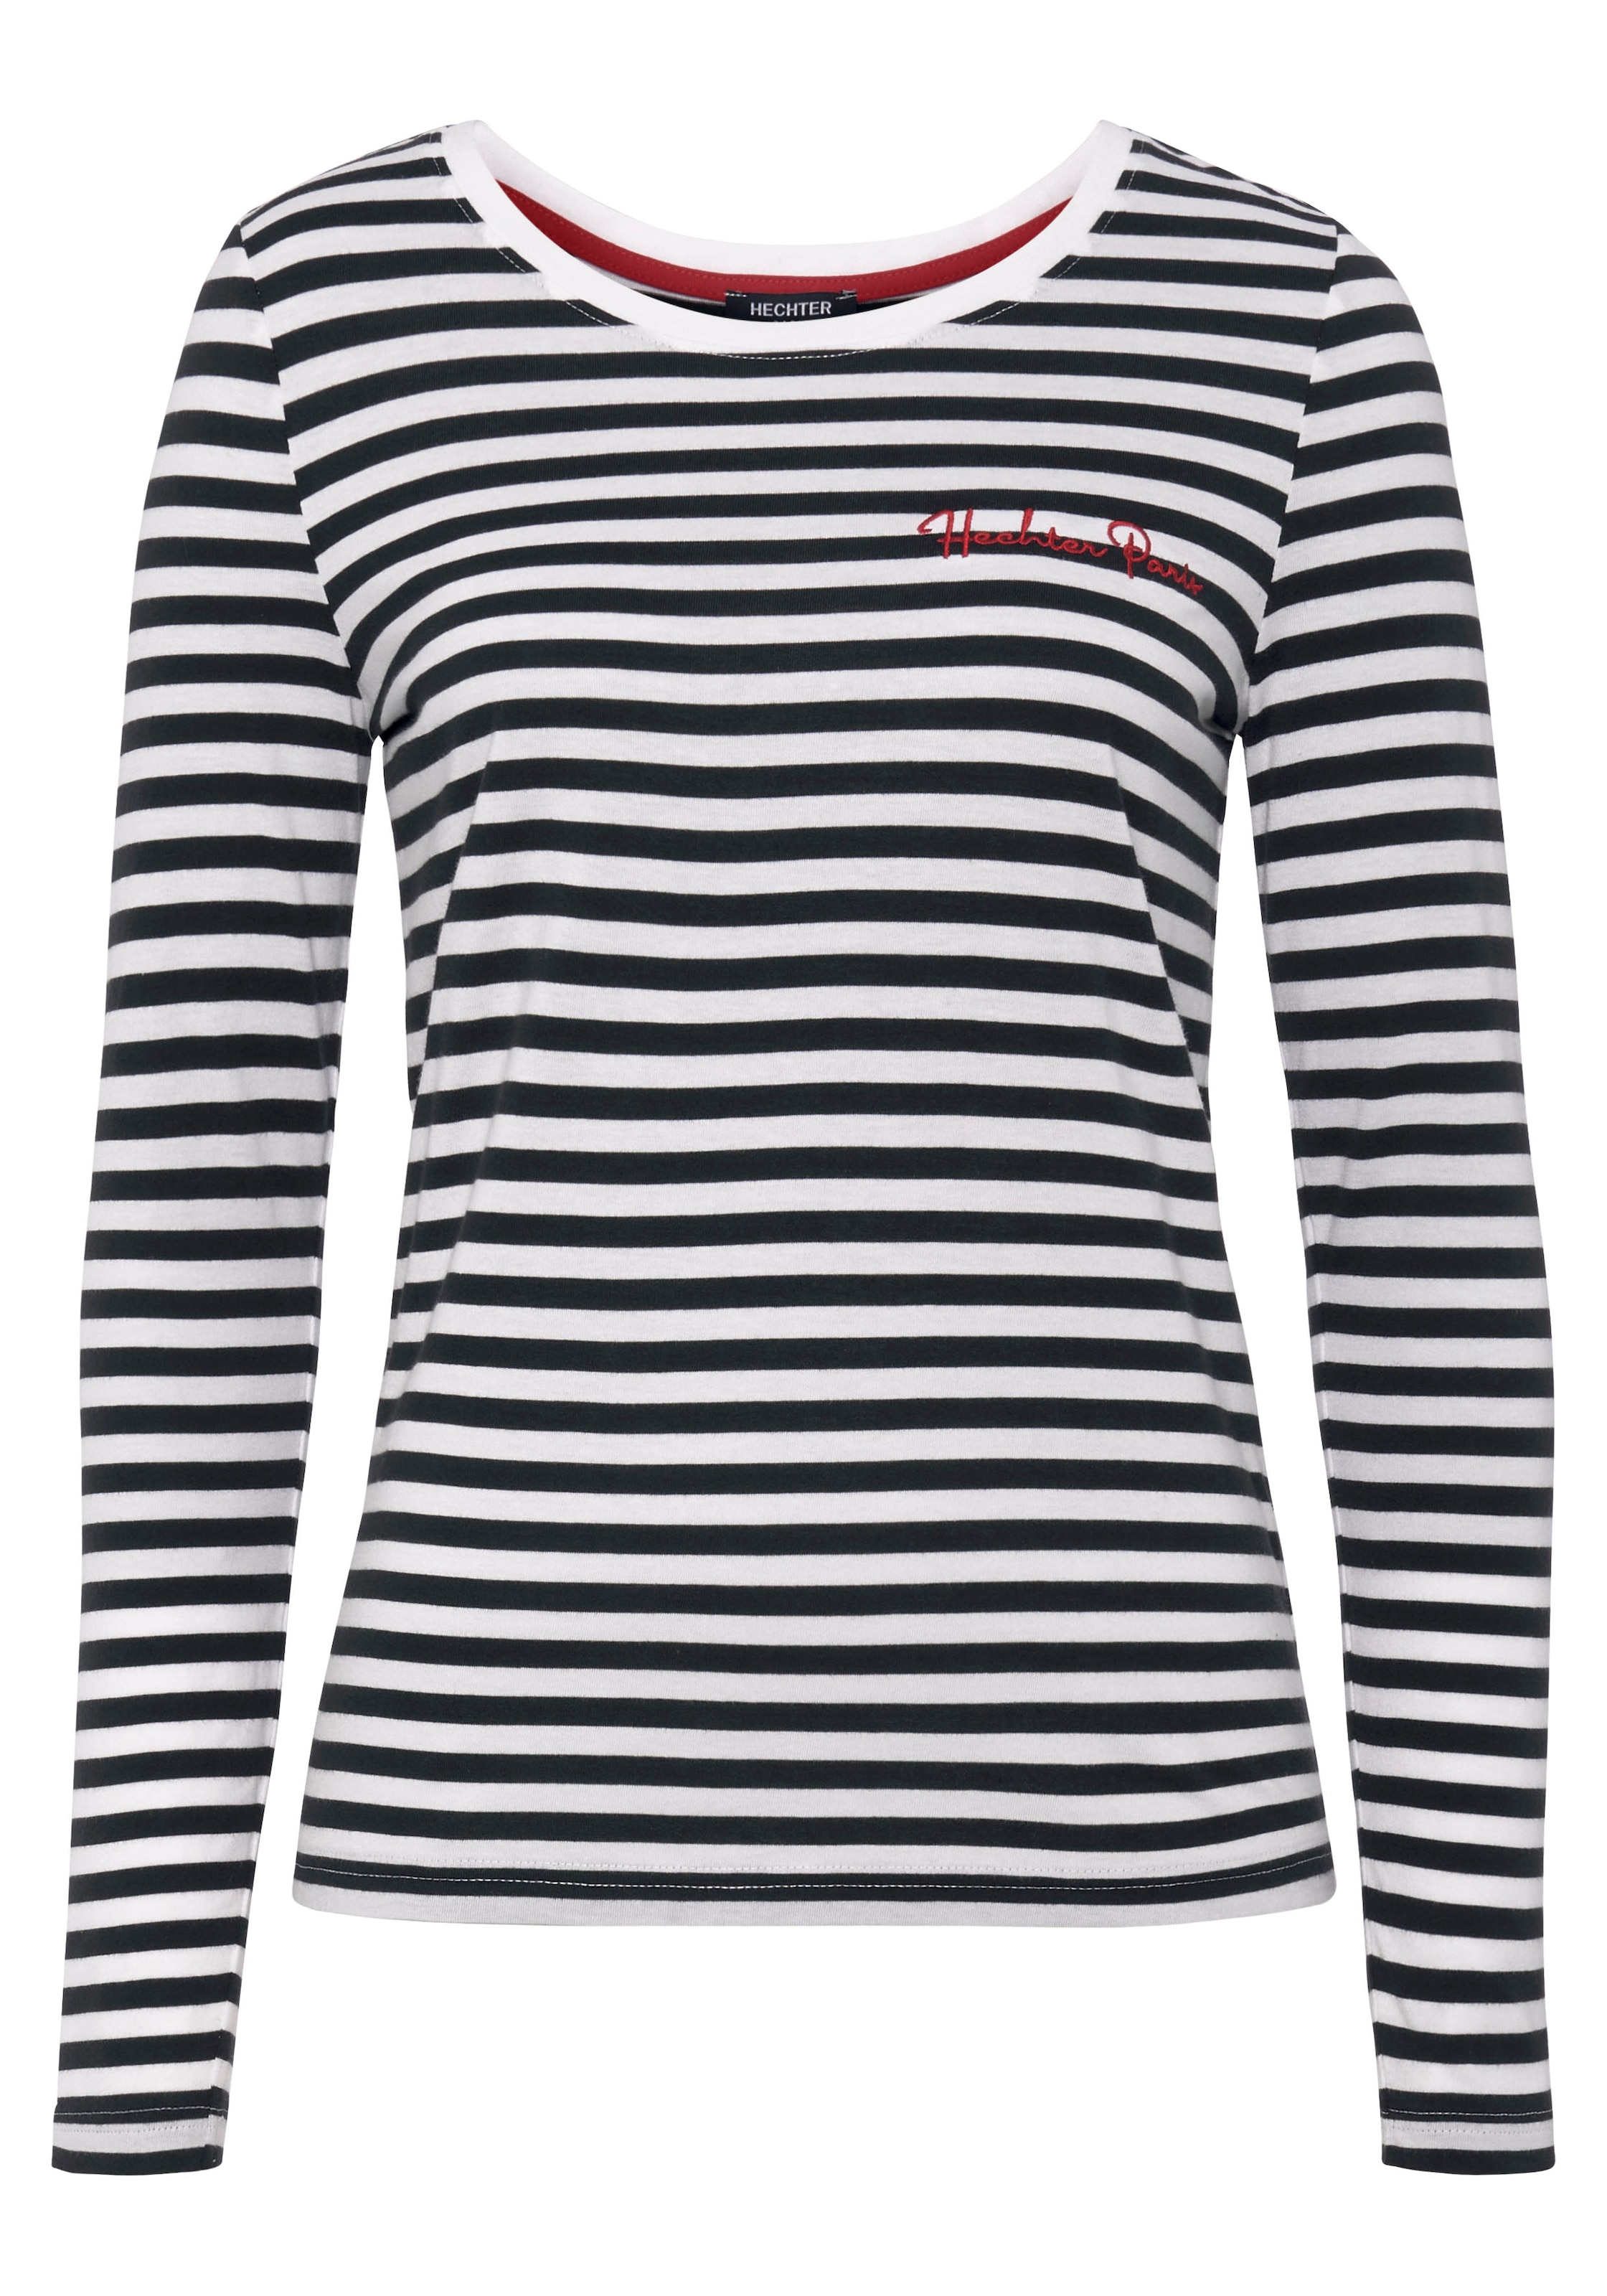 Online-Shop PARIS Markenstickerei im mit Langarmshirt, HECHTER bestellen